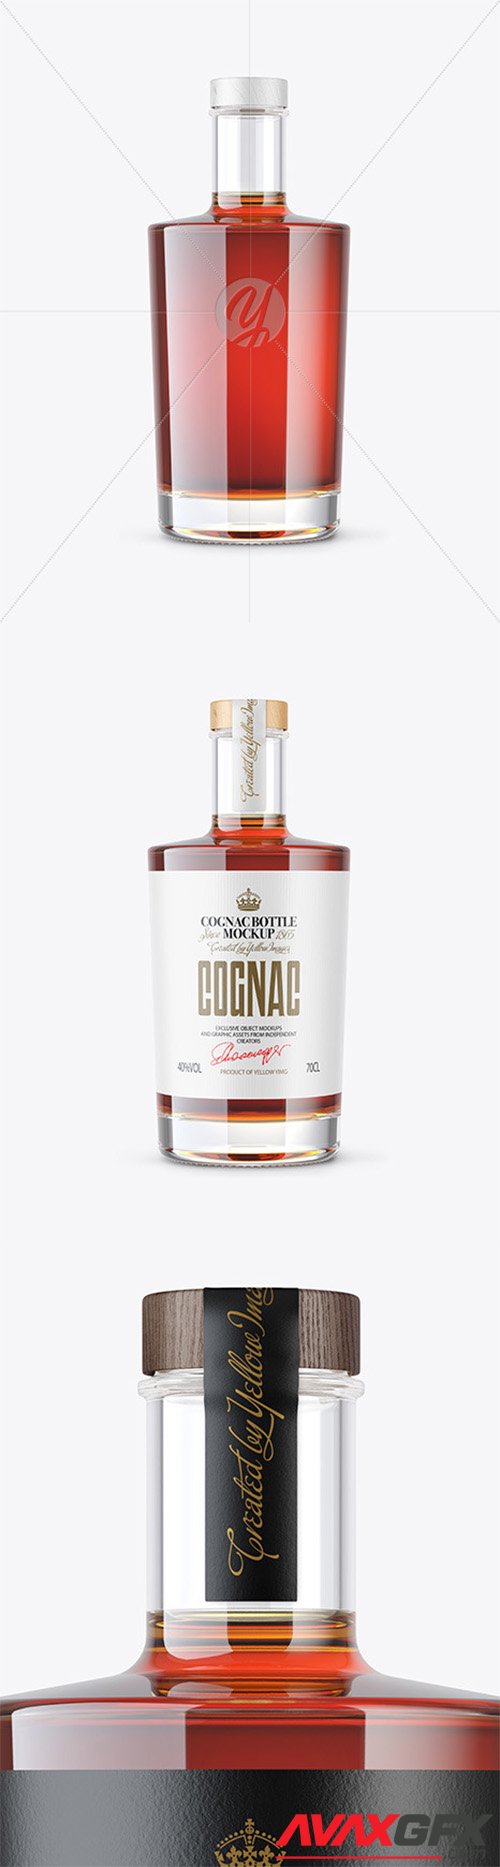 Clear Glass Cognac Bottle Mockup 80606